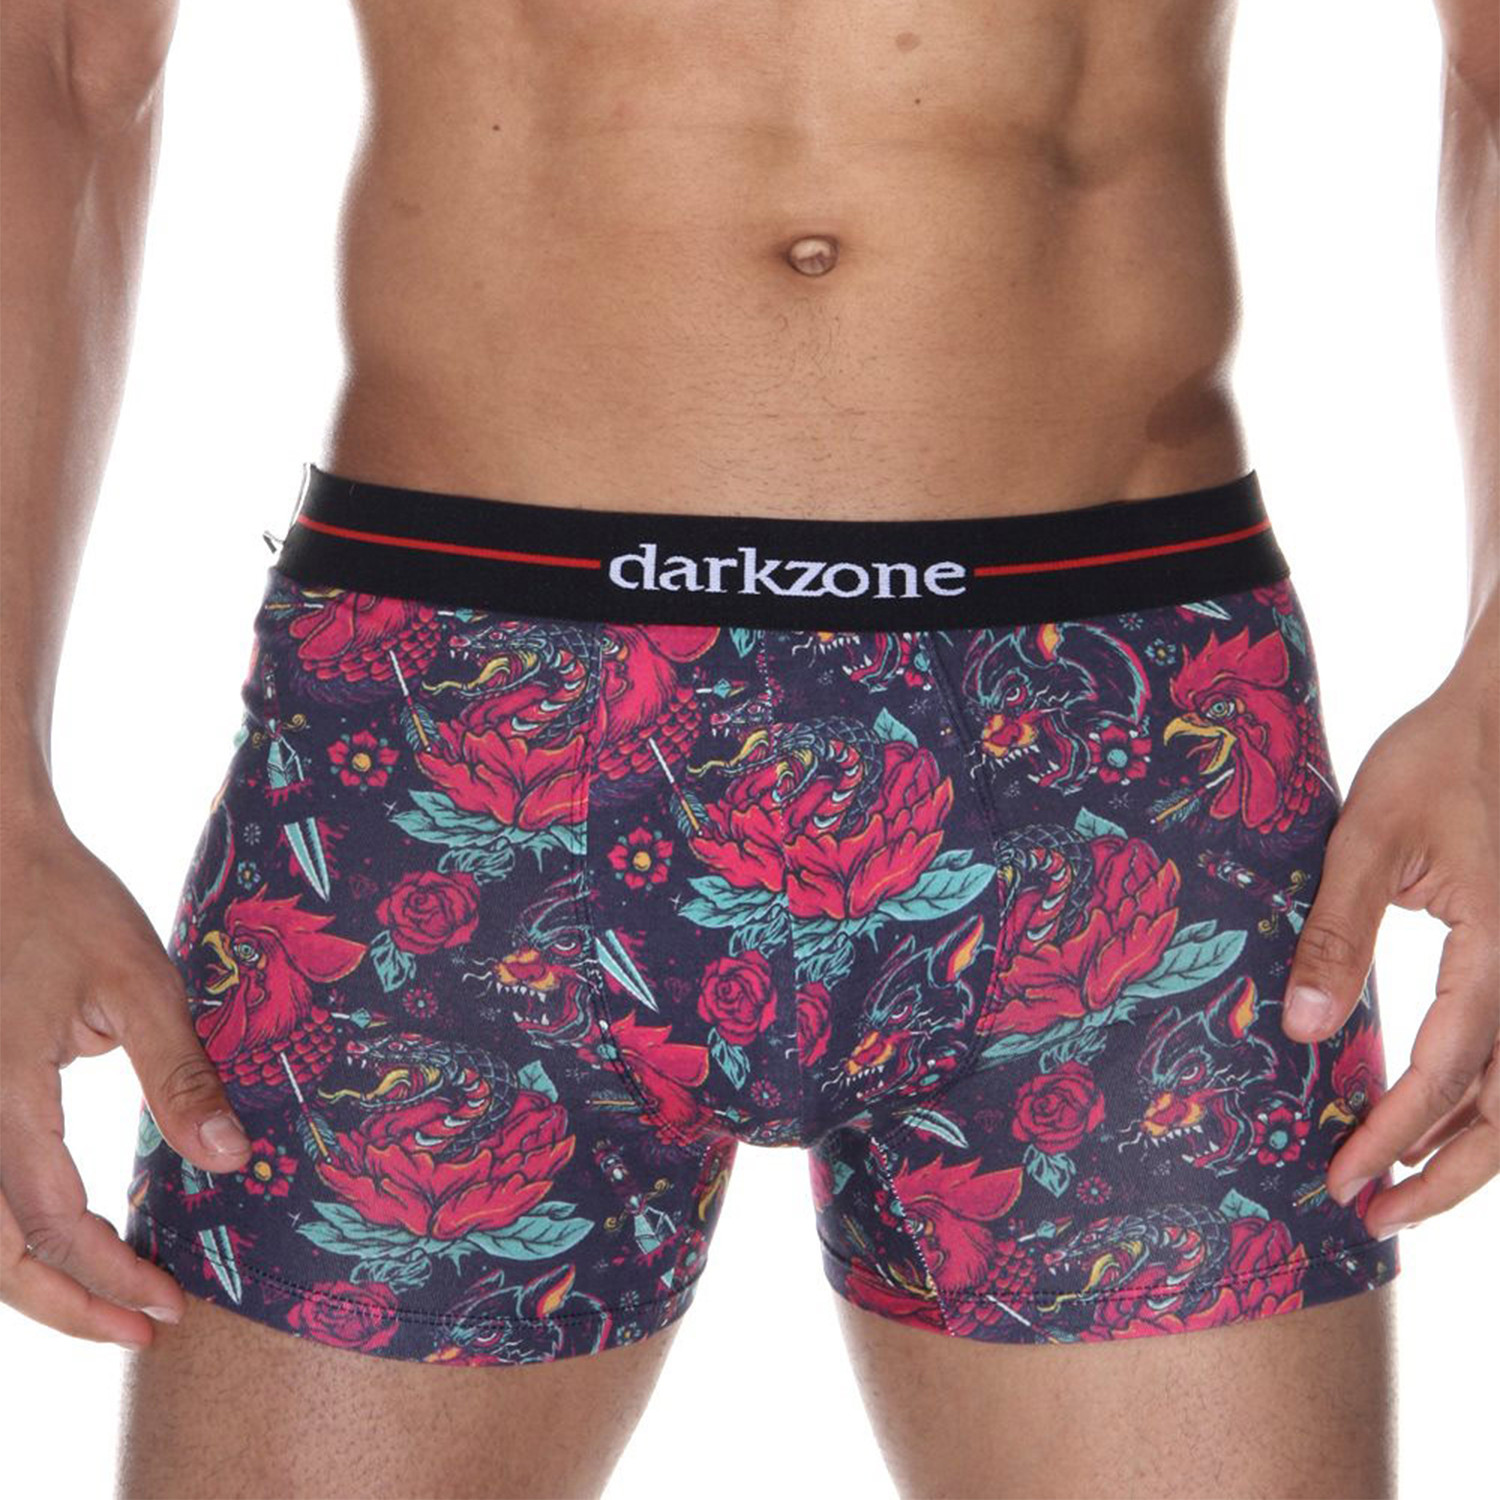 darkzone underwear